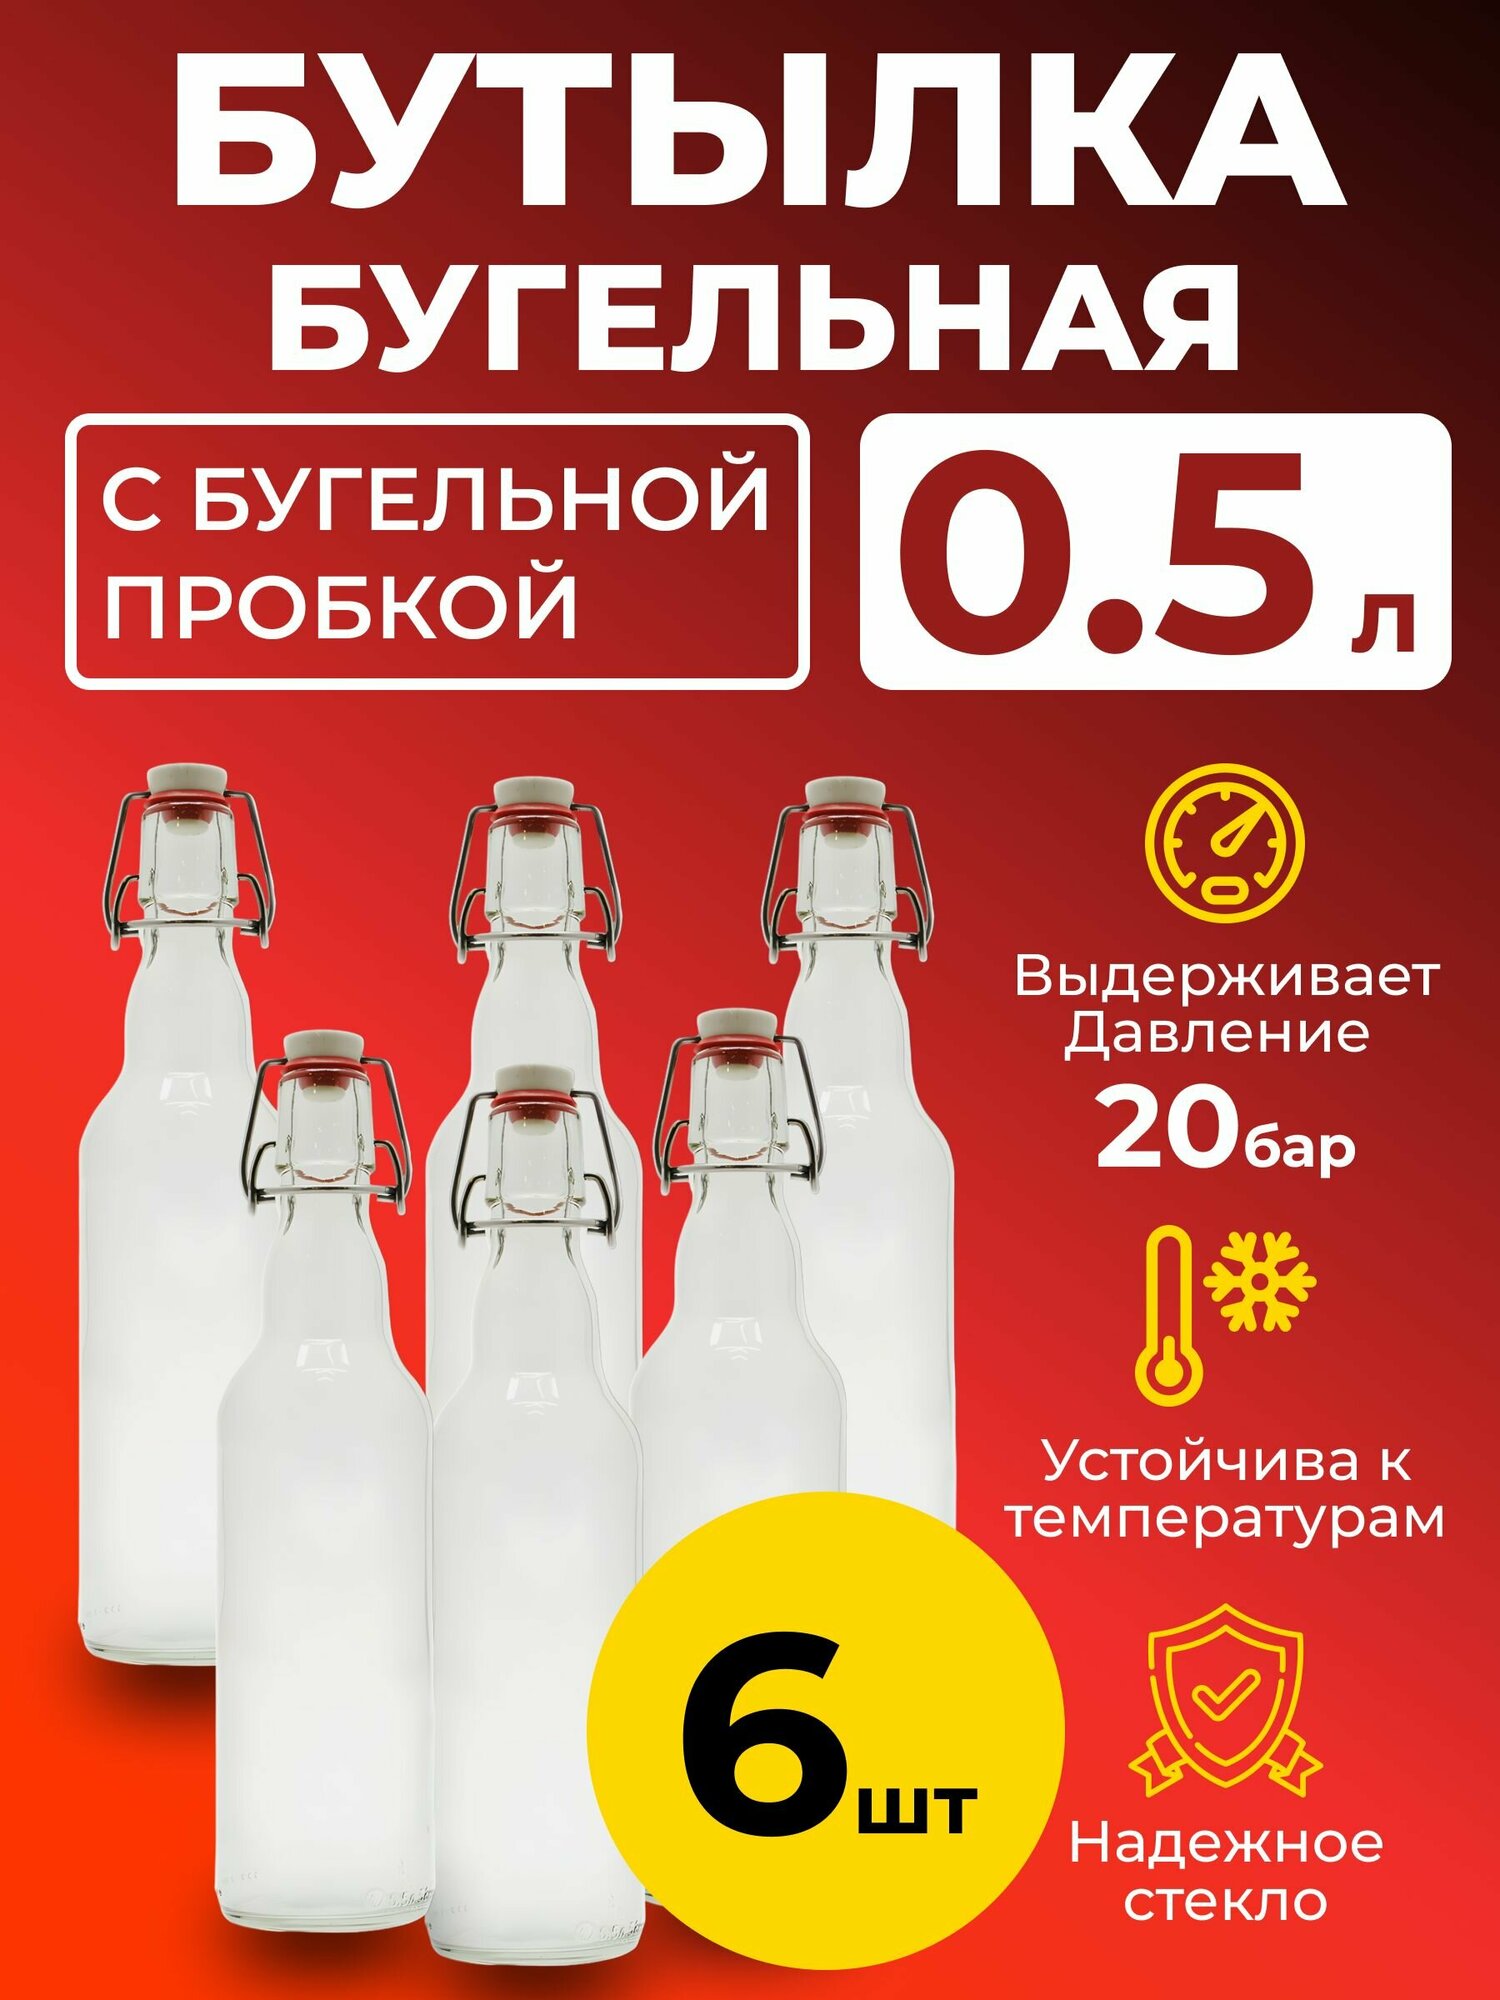 Бутылка бугельная 0,5 л. с бугельной пробкой (светлая), 6 шт.